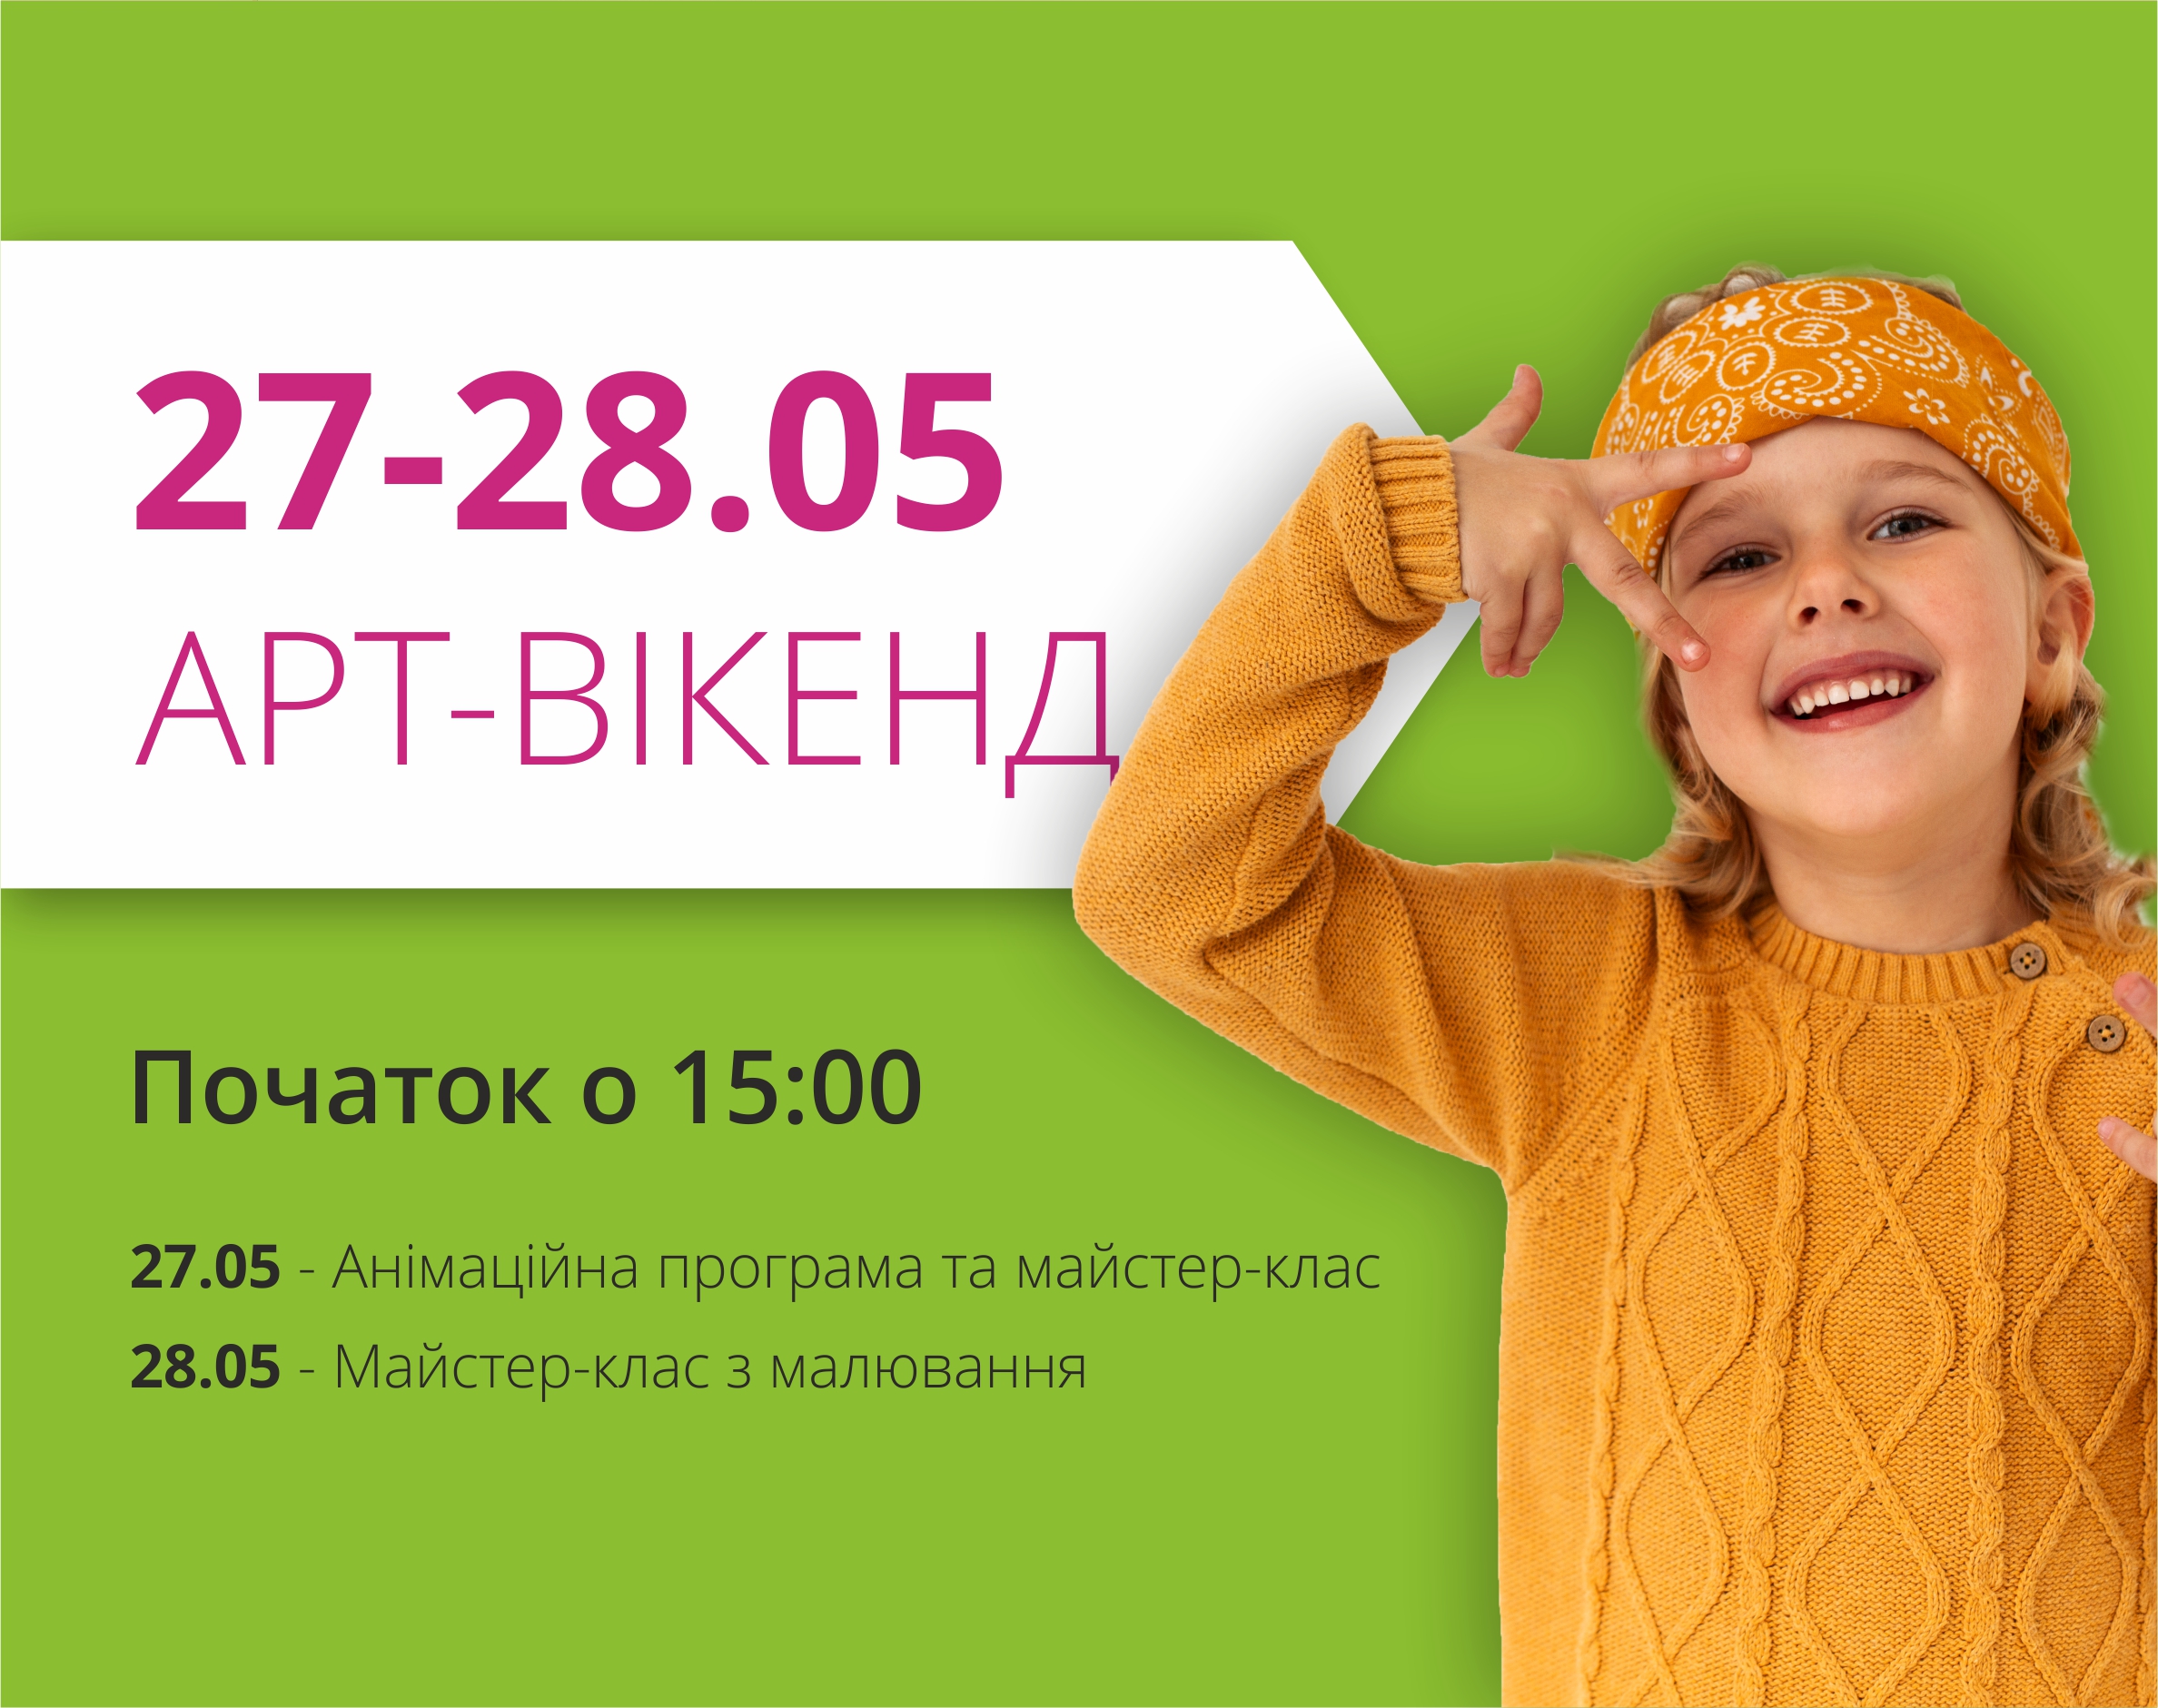 Запрошуємо на вихідні в ТРЦ "Любава"!